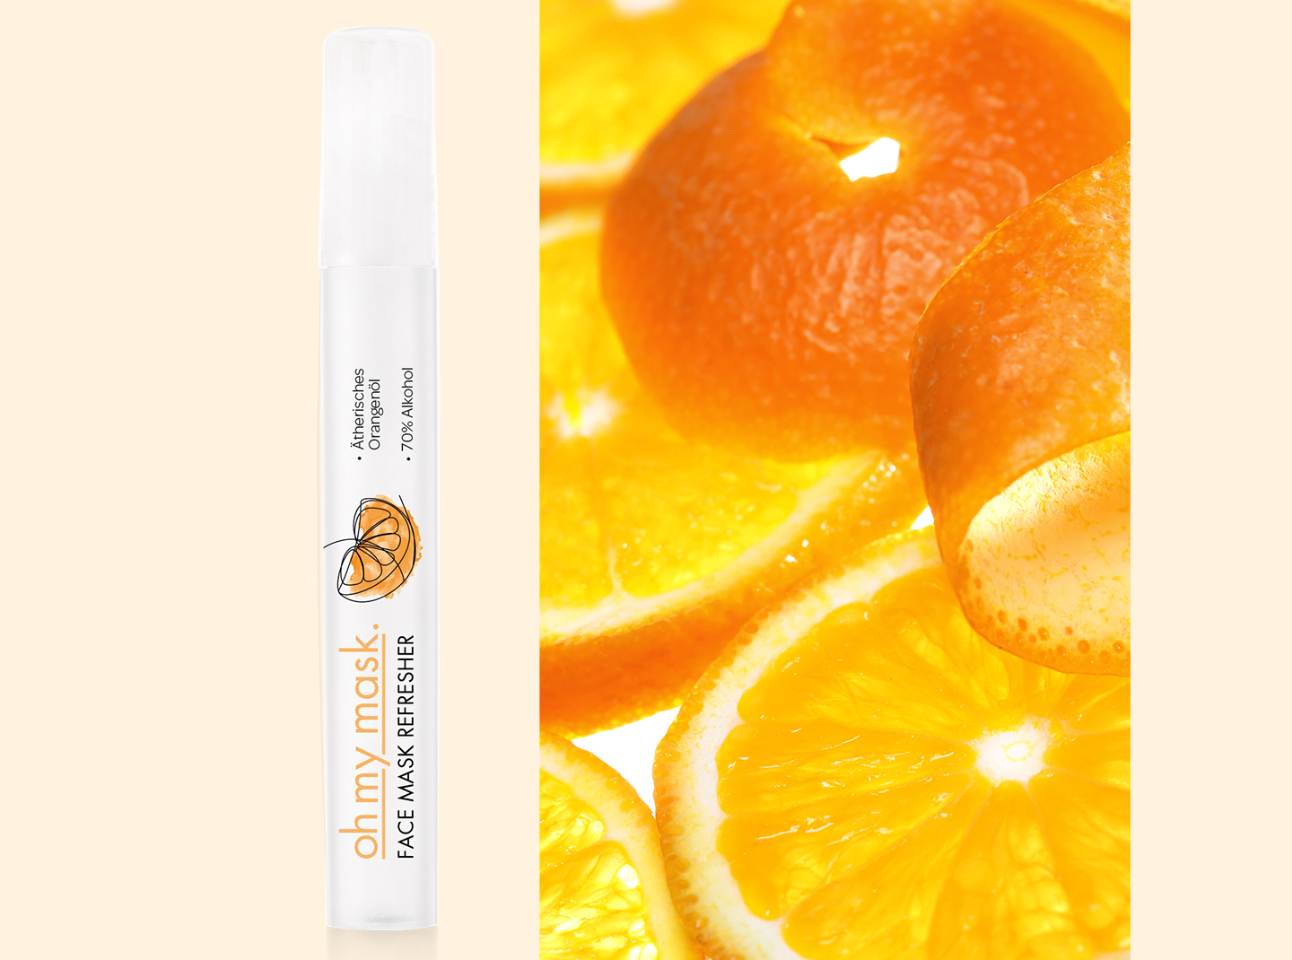 Face Mask Refresher Erfrischungsspray Orange